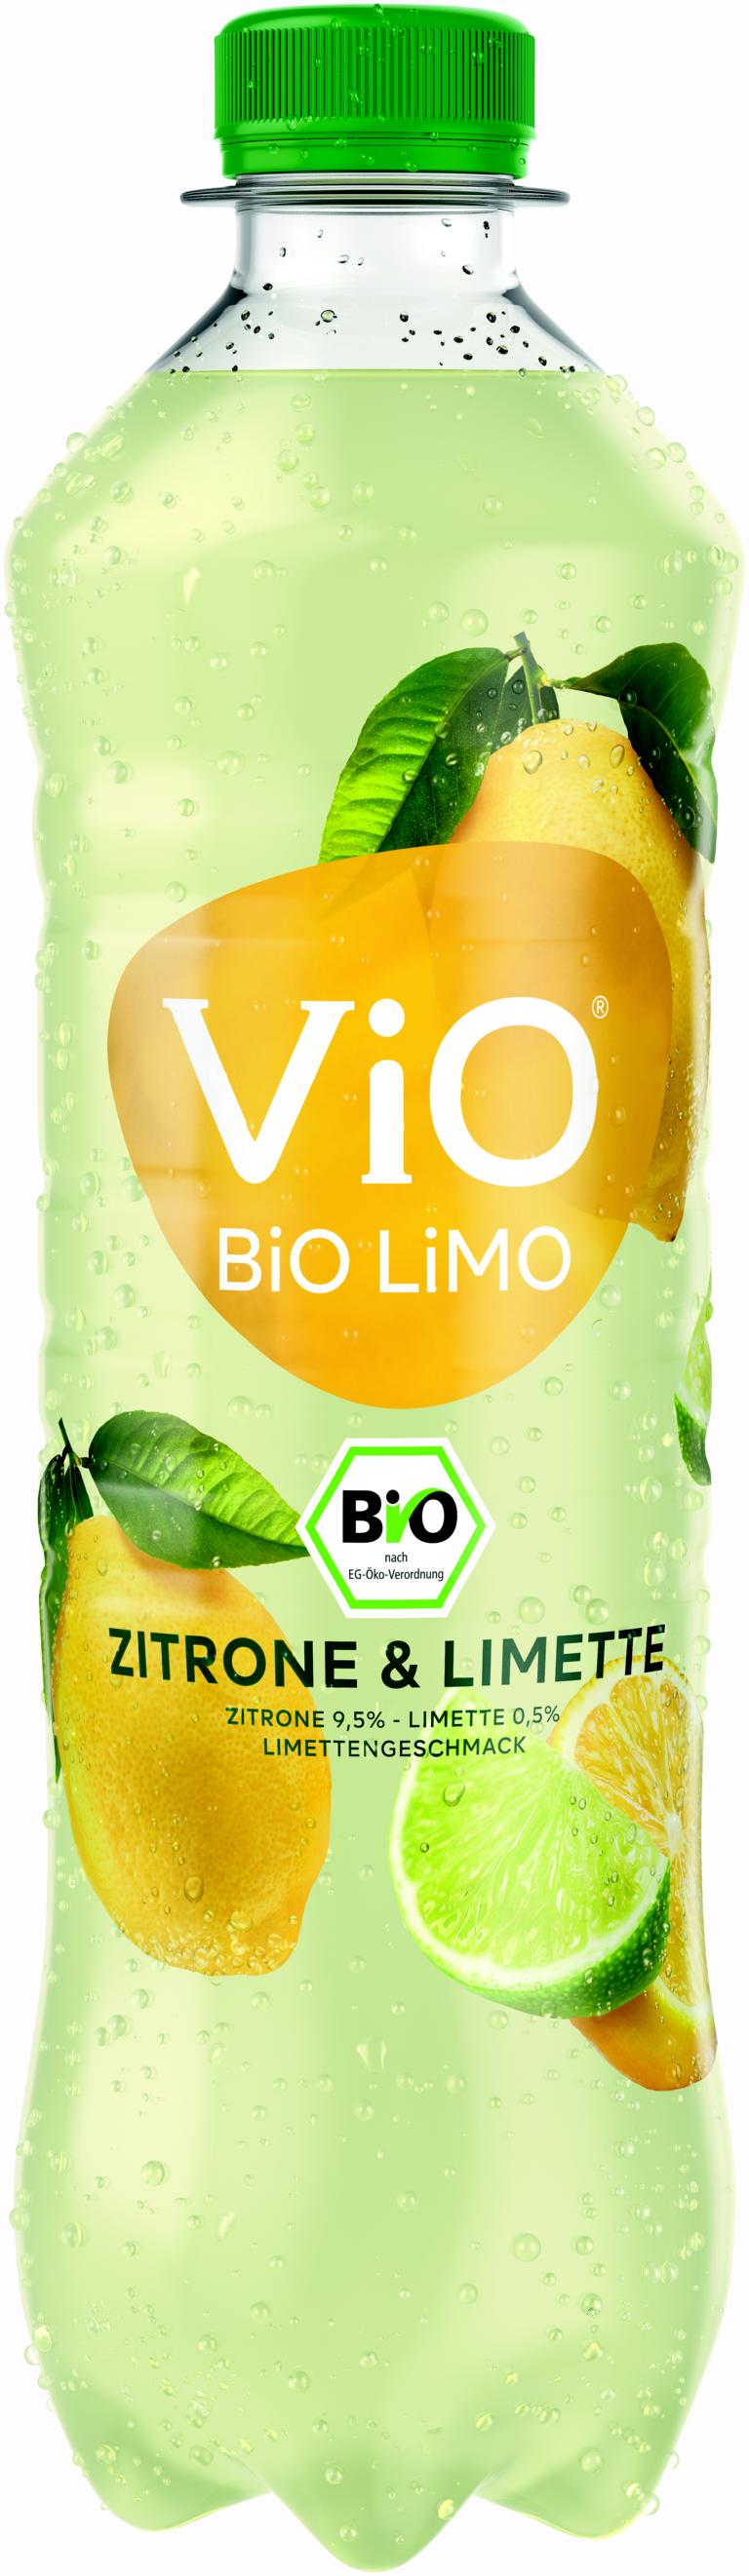 Vio Bio Limo Zitrone Limette 18x05 L